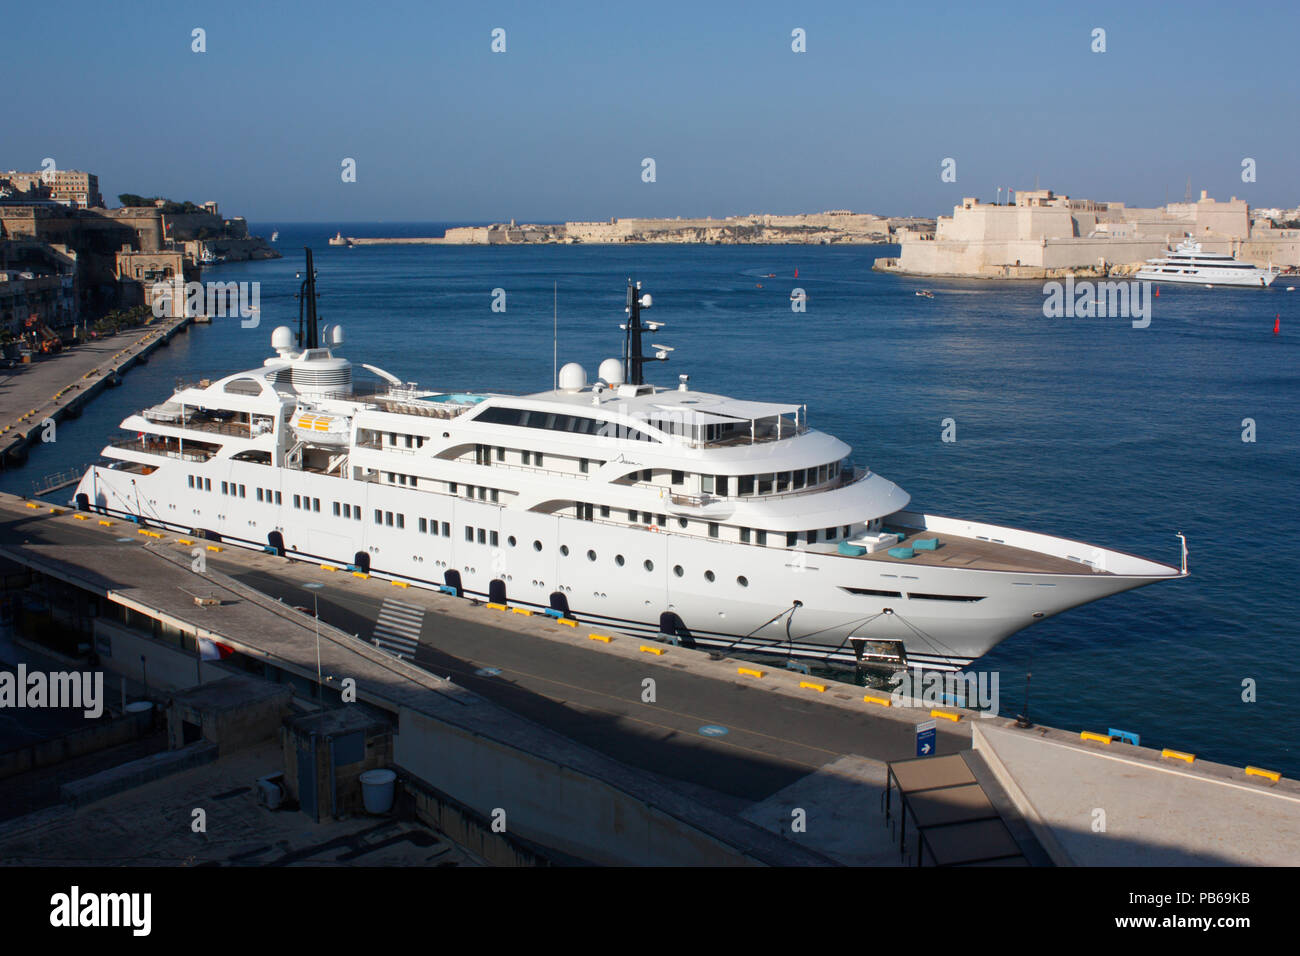 The passenger ship Dream (IMO 9005871) in Malta's Grand Harbour Stock Photo